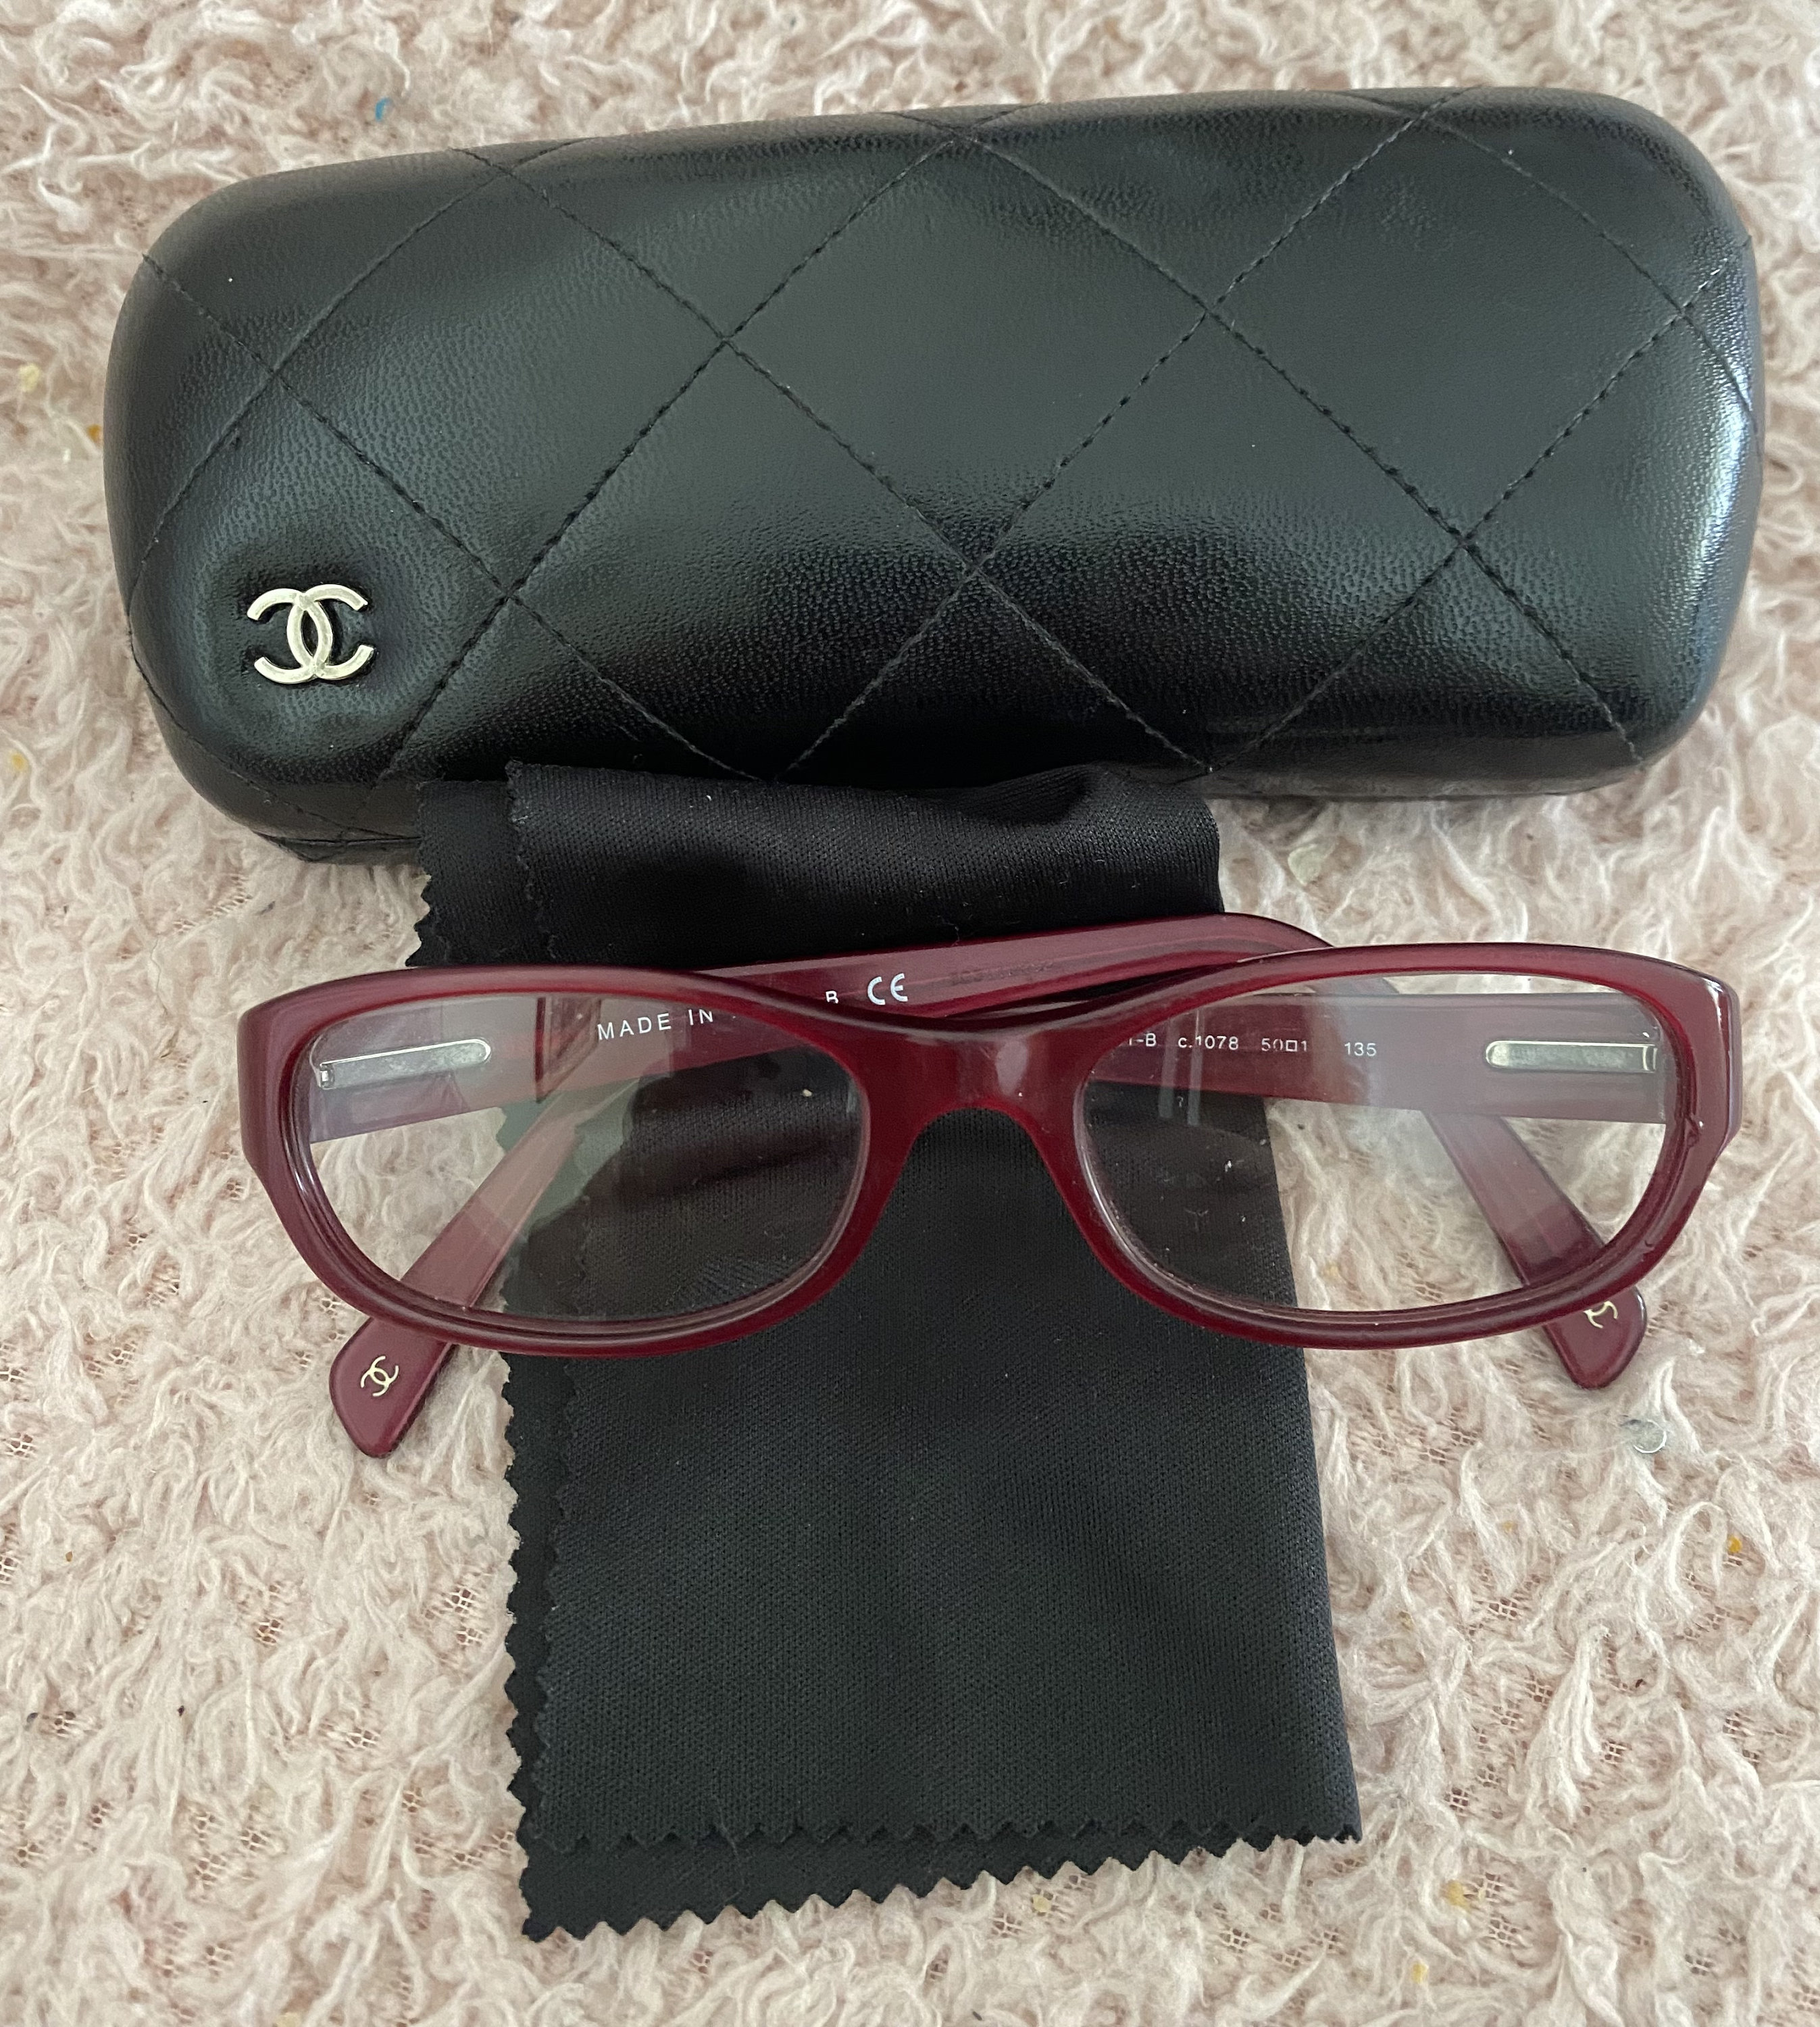 Chanel glasses case - .de